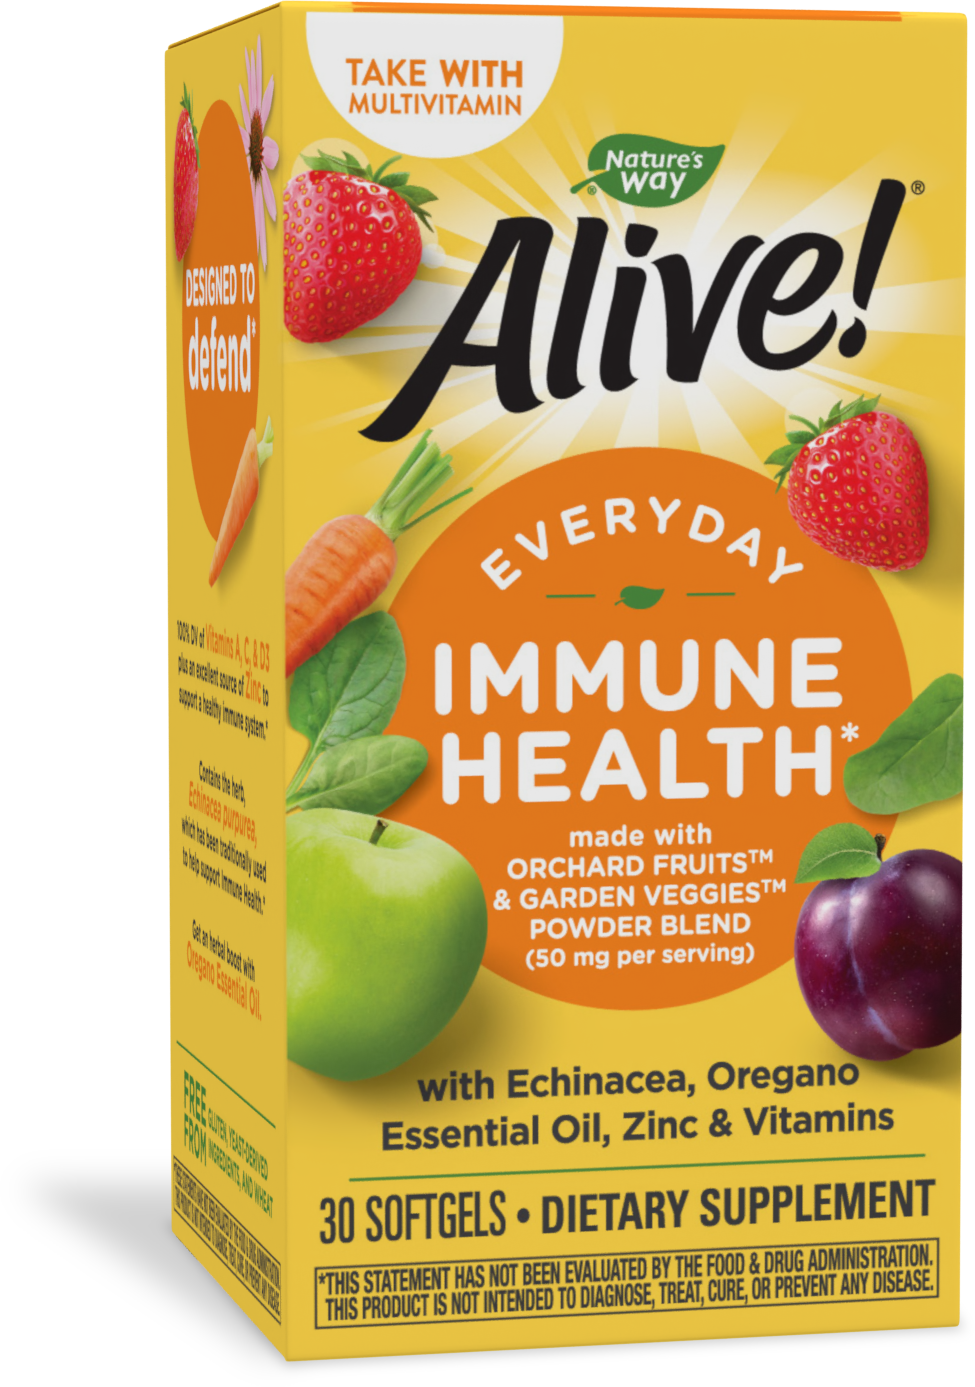 Alive!® Everyday Immune Health*